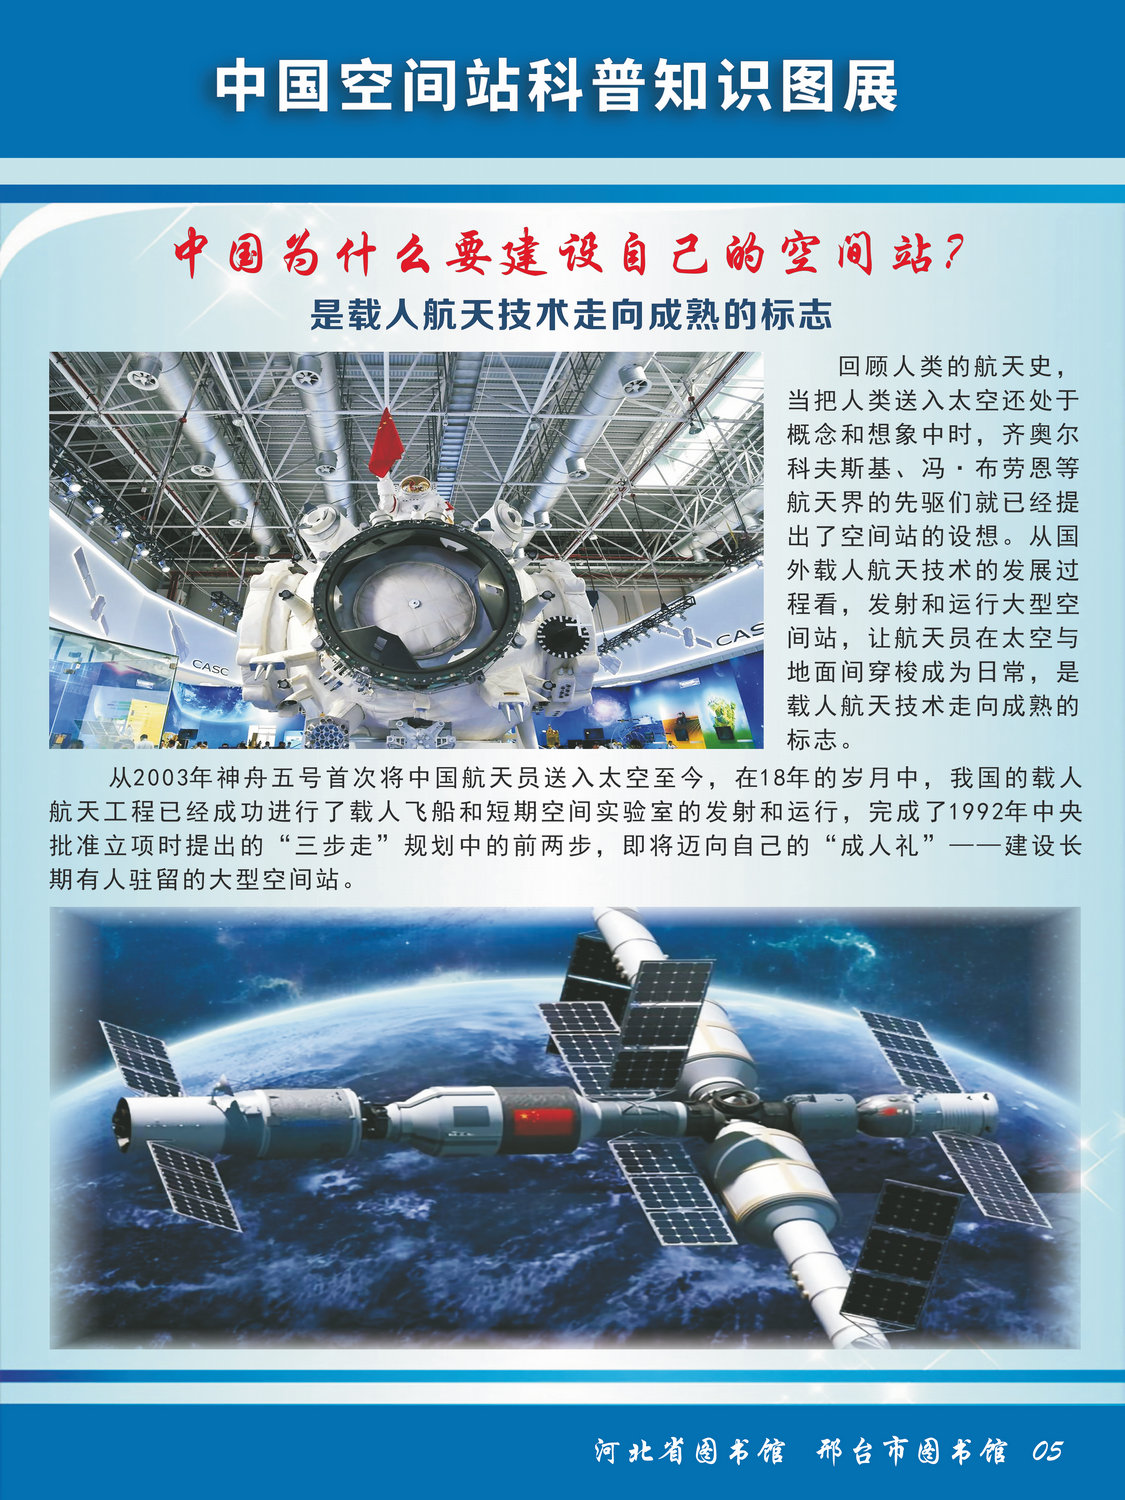 中国空间站科普知识图文展_图5